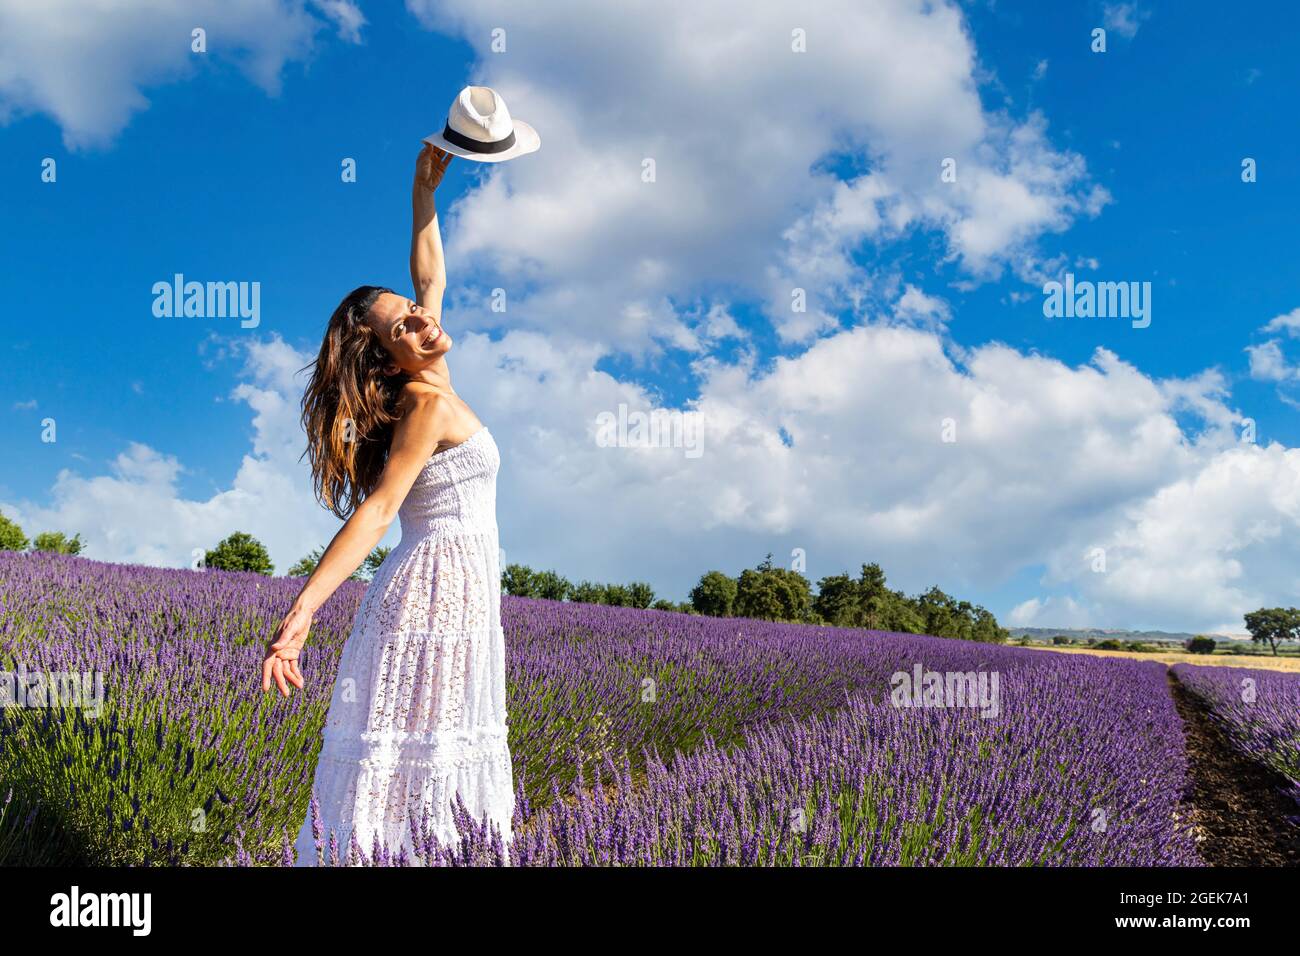 Junge glückliche Frau tanzt in einem Lavendelfeld und hebt ihren Hut an den blauen Himmel. Konzept des Wohlbefindens in der Natur und Freiheit. Stockfoto